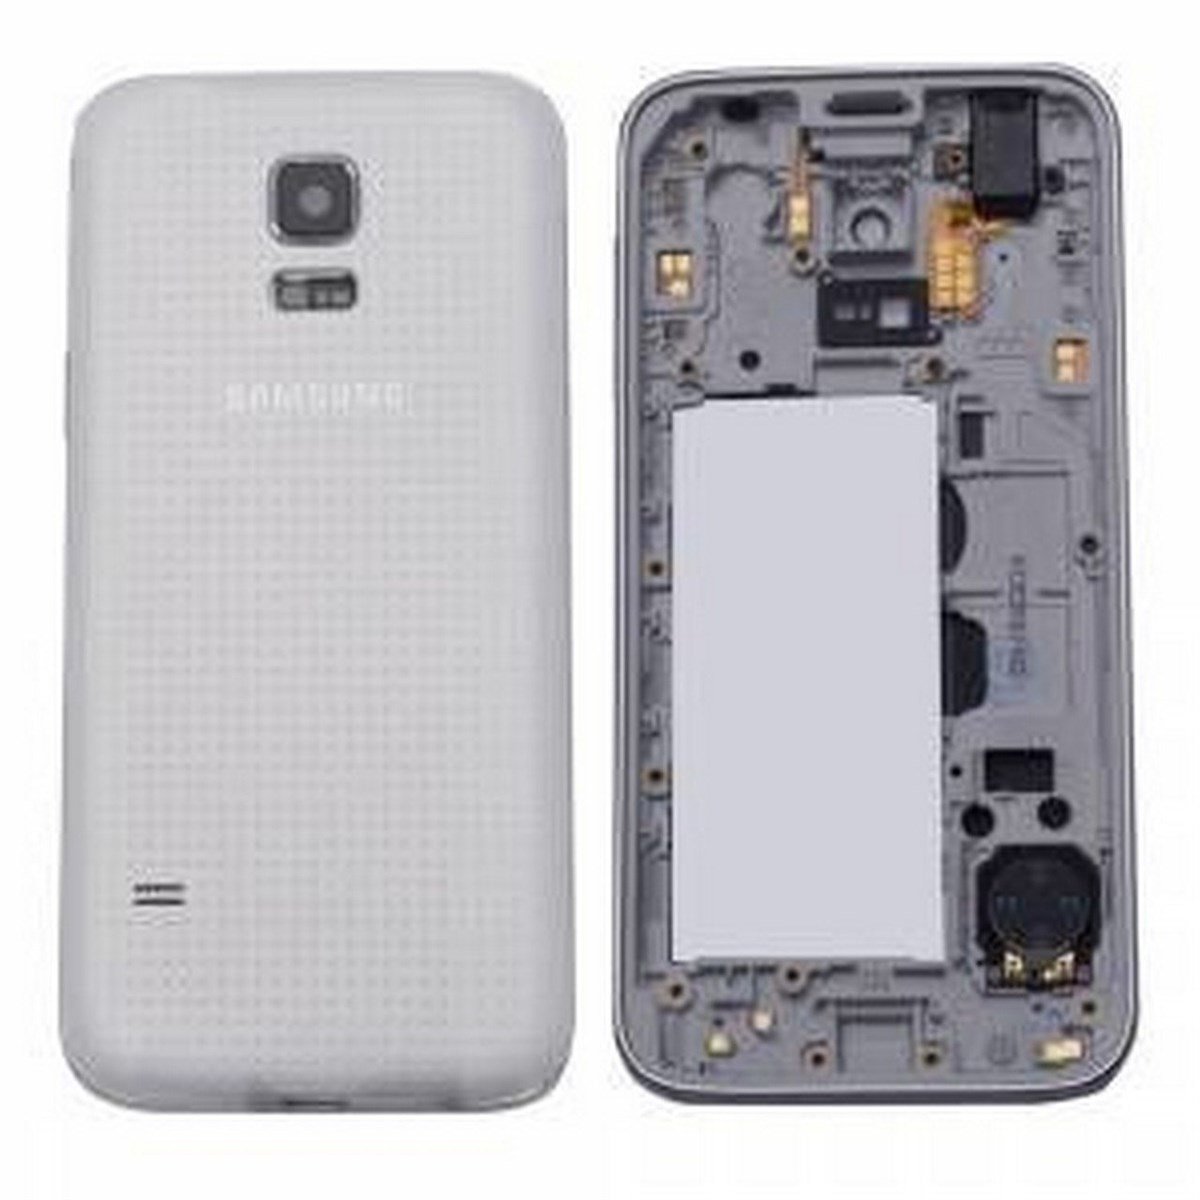 Samsung Galaxy S5 Mini G800 Kasa Kapak Beyaz Duos Çıtasız - tekyerdenal.com